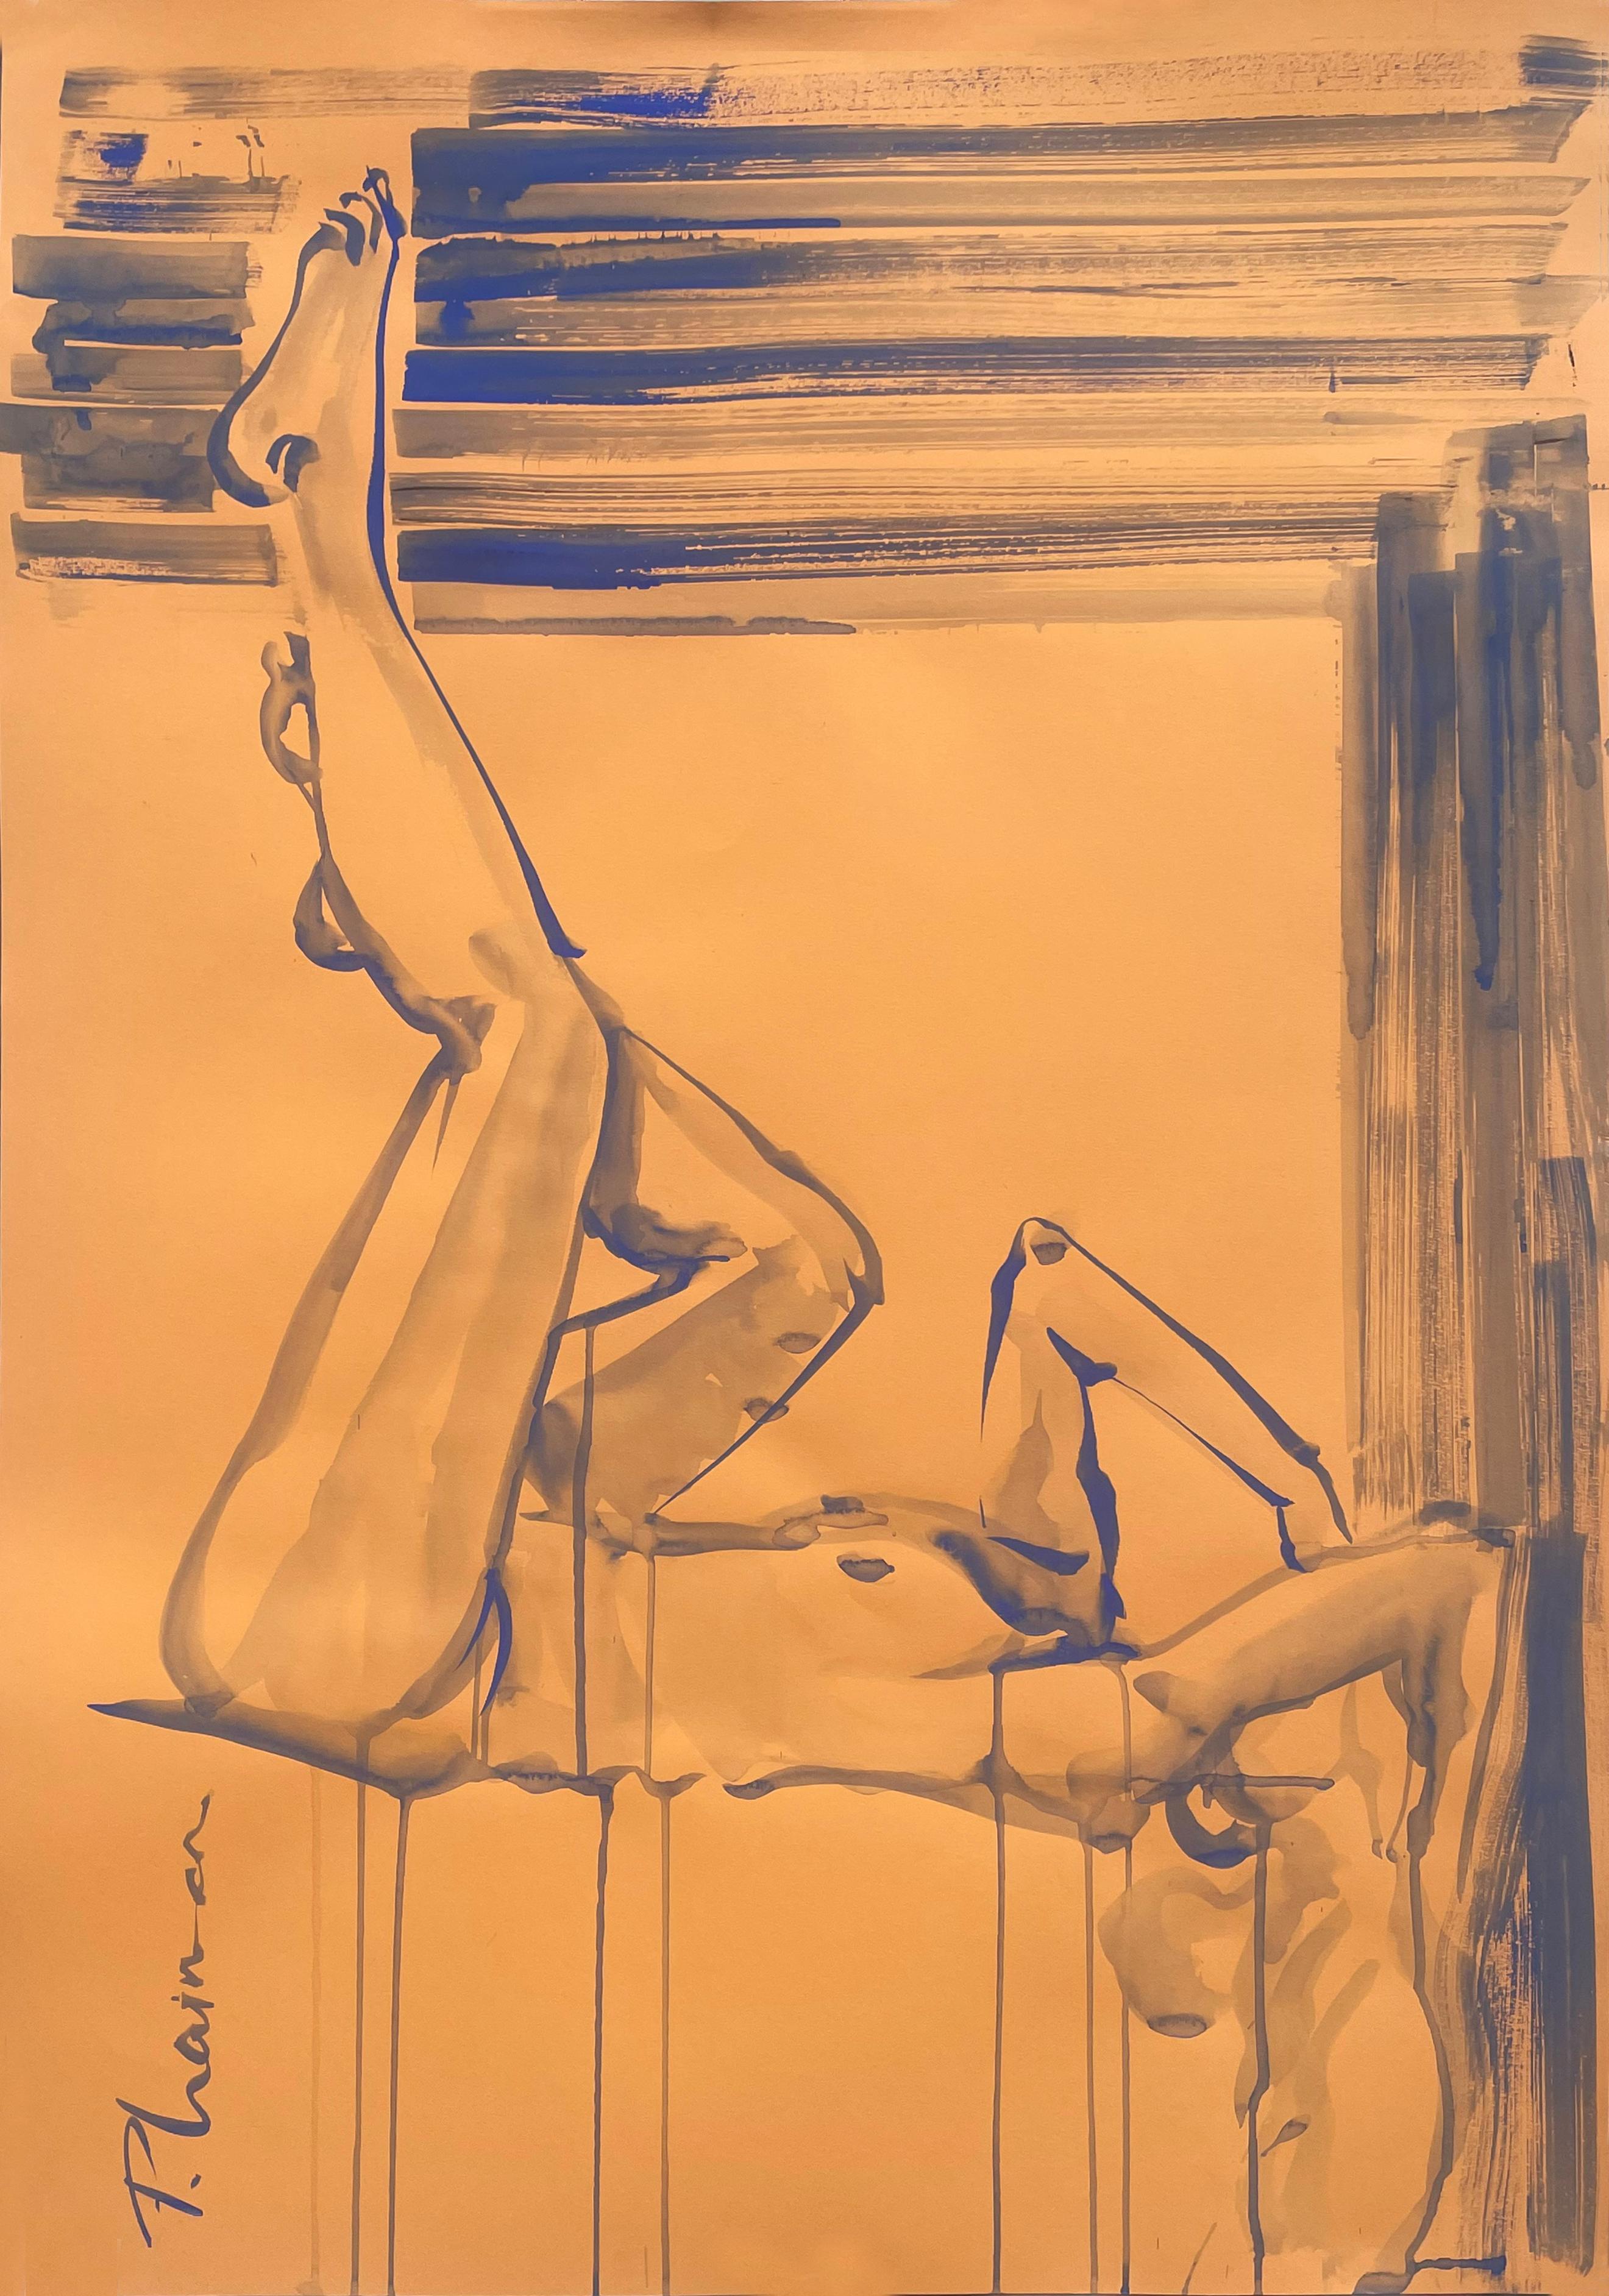 Siesta
100x70cm / 39x27.5in

Akt in Interieur, Bleistift und ultramarinblaue Tempera auf Papier, inspiriert von Matisse.

Große Zeichnung. Wird in einer Rolle aus Florida, USA, geliefert.

Künstlerisches Statement
"Ich habe mit der Innenraummalerei